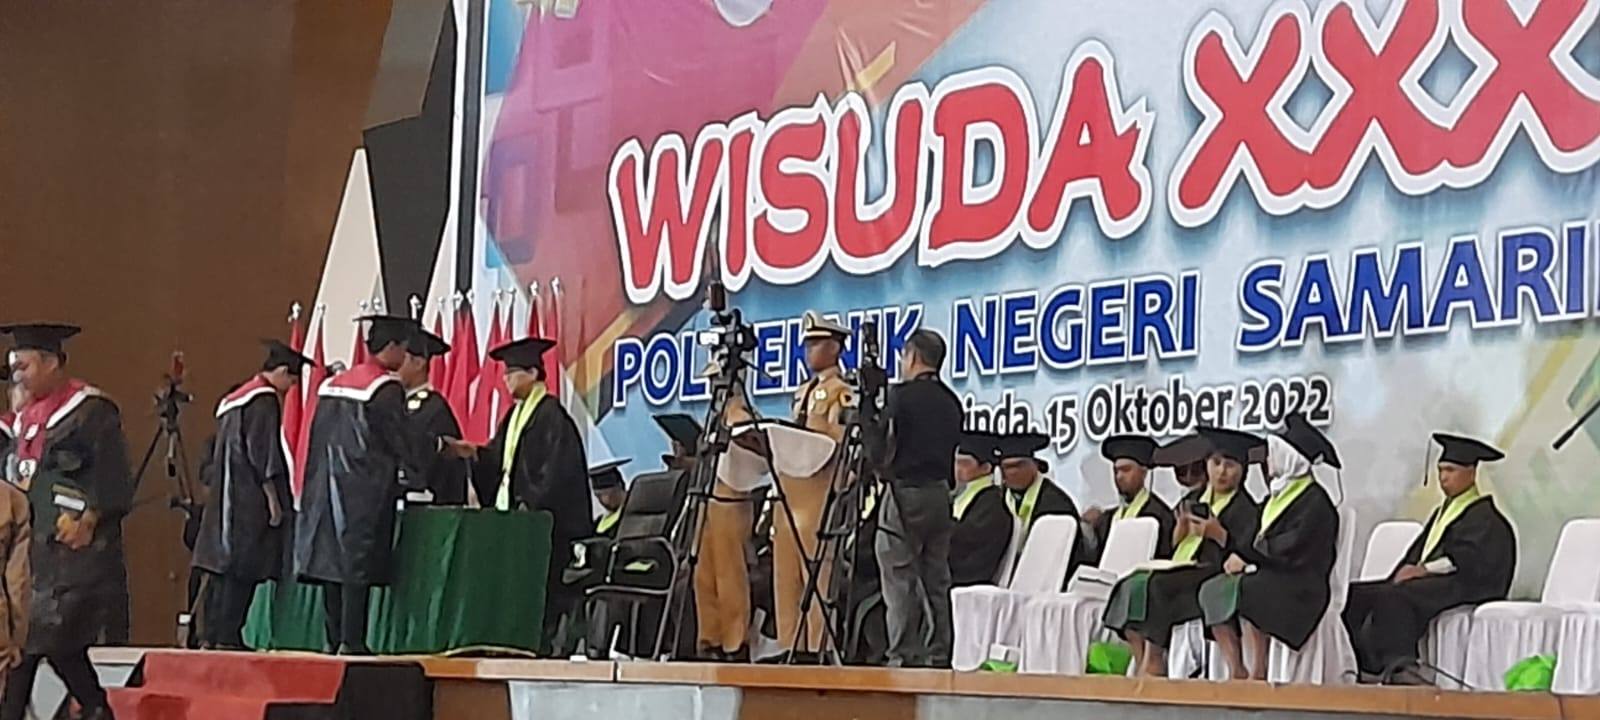 Lepas 1.529 wisudawan, Plt Direktur Polnes Samarinda Budi Nugroho berharap lulusan jadi agen perubahan di masyarakat.